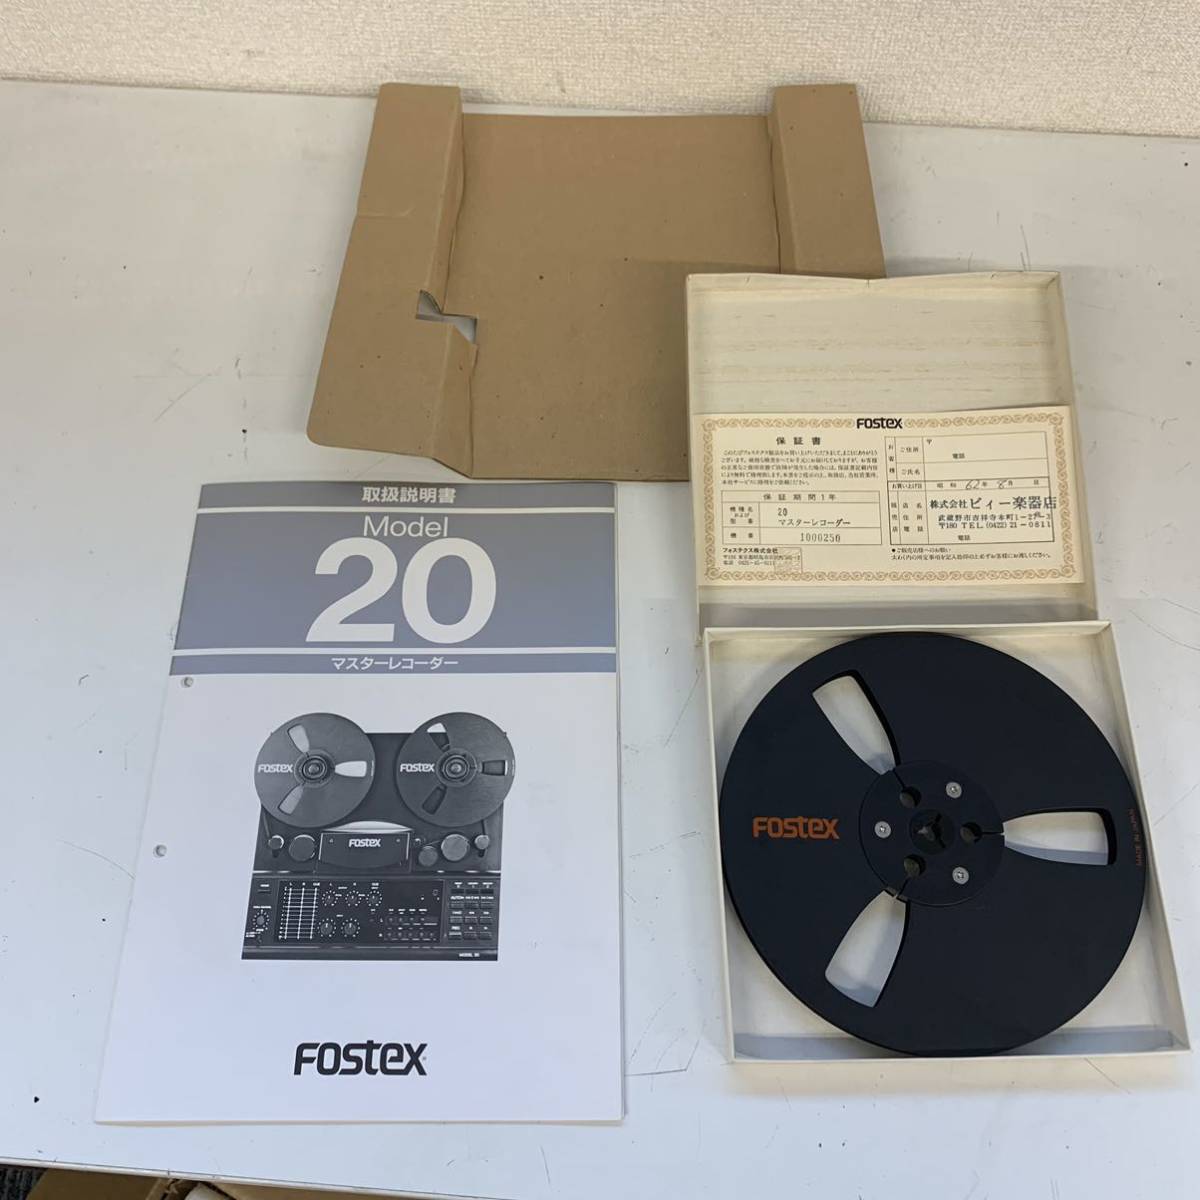 【M3】 Fostex Model 20 オープンリールデッキ 元箱付き フォステックス フォステクス テープ付き 893-1_画像8